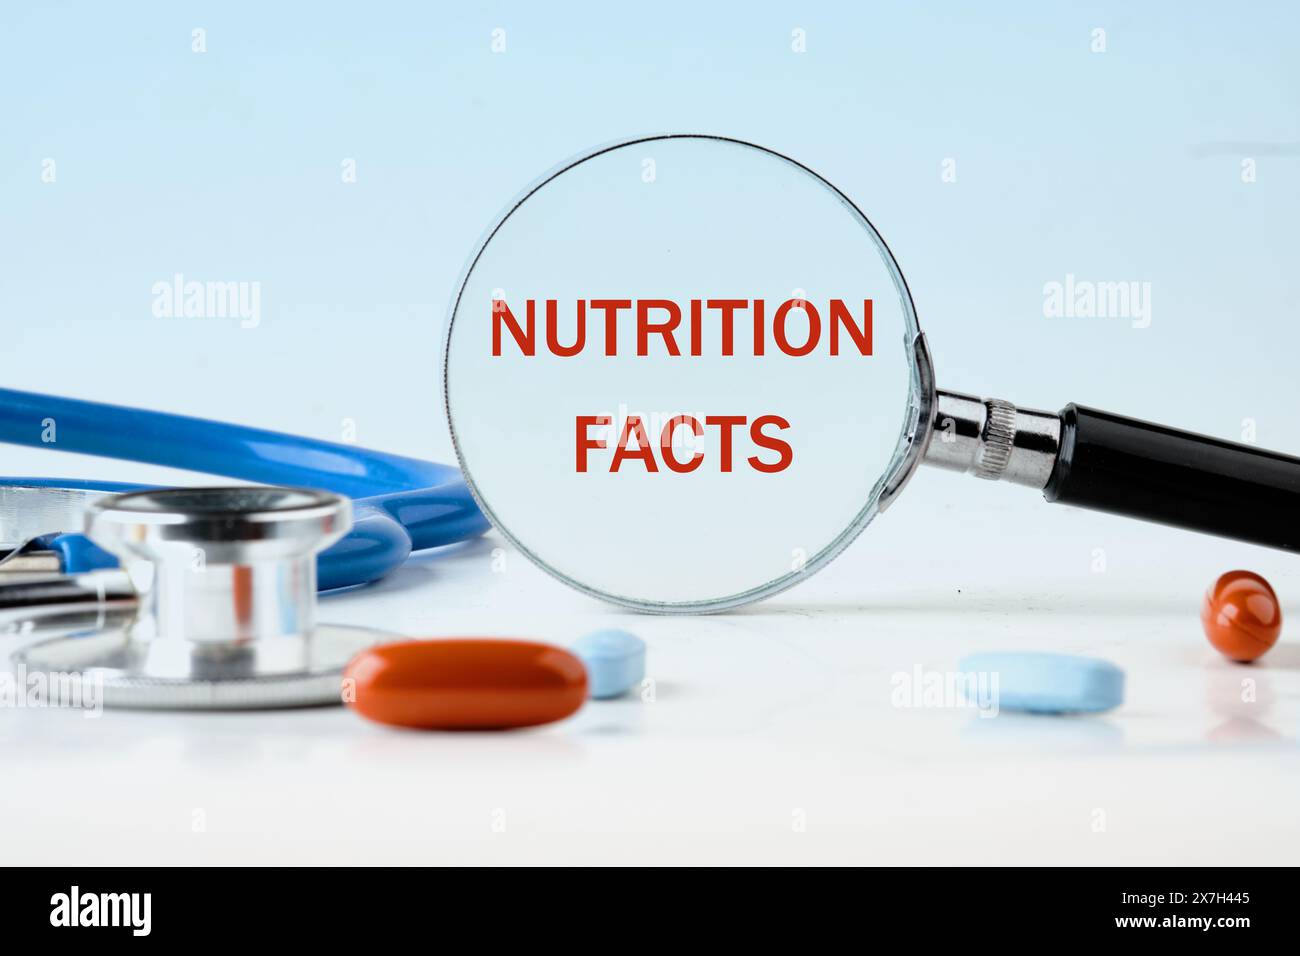 Un sacco di Nutrition Facts testo scritto attraverso una lente d'ingrandimento su uno sfondo azzurro, accanto alle pillole Foto Stock